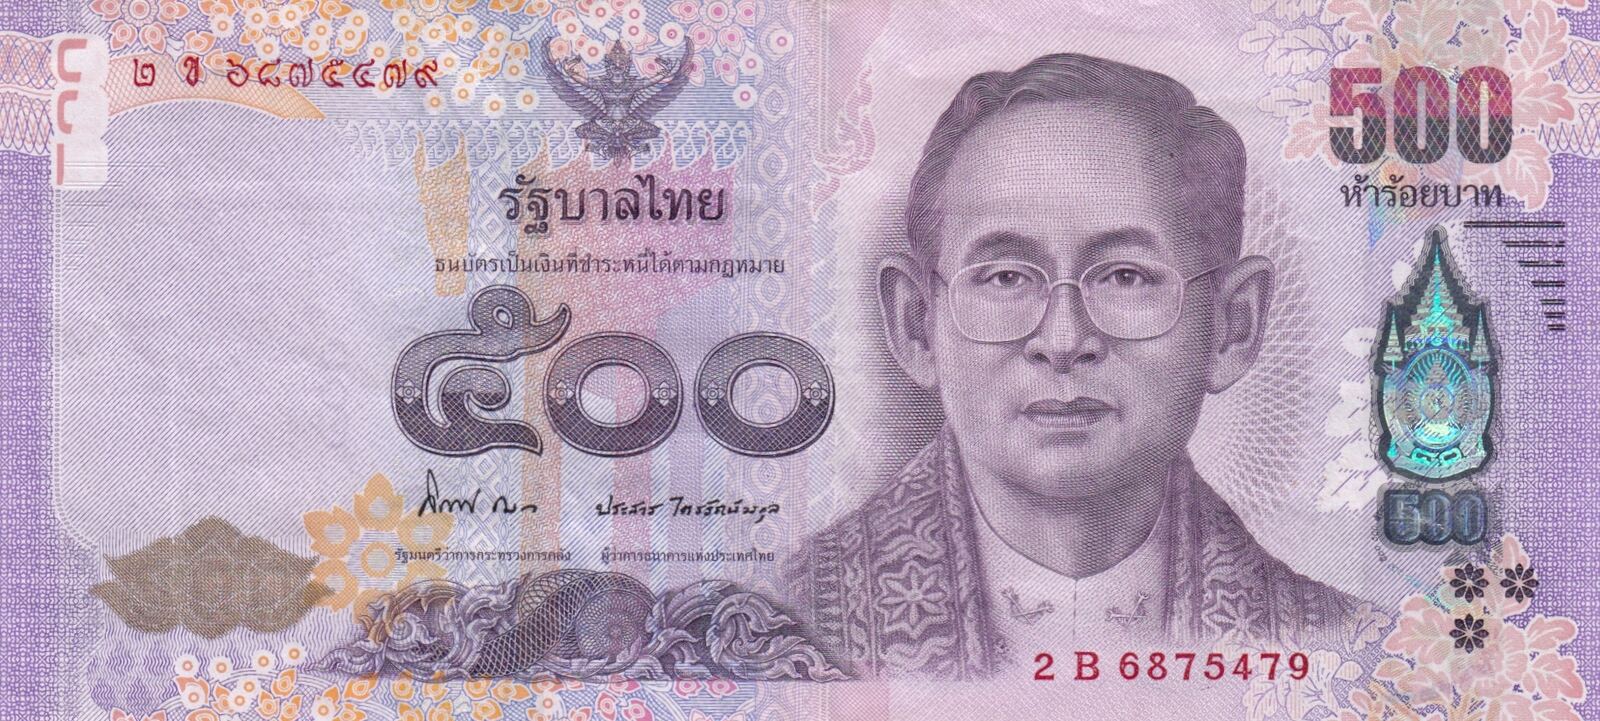 в тайланде деньги